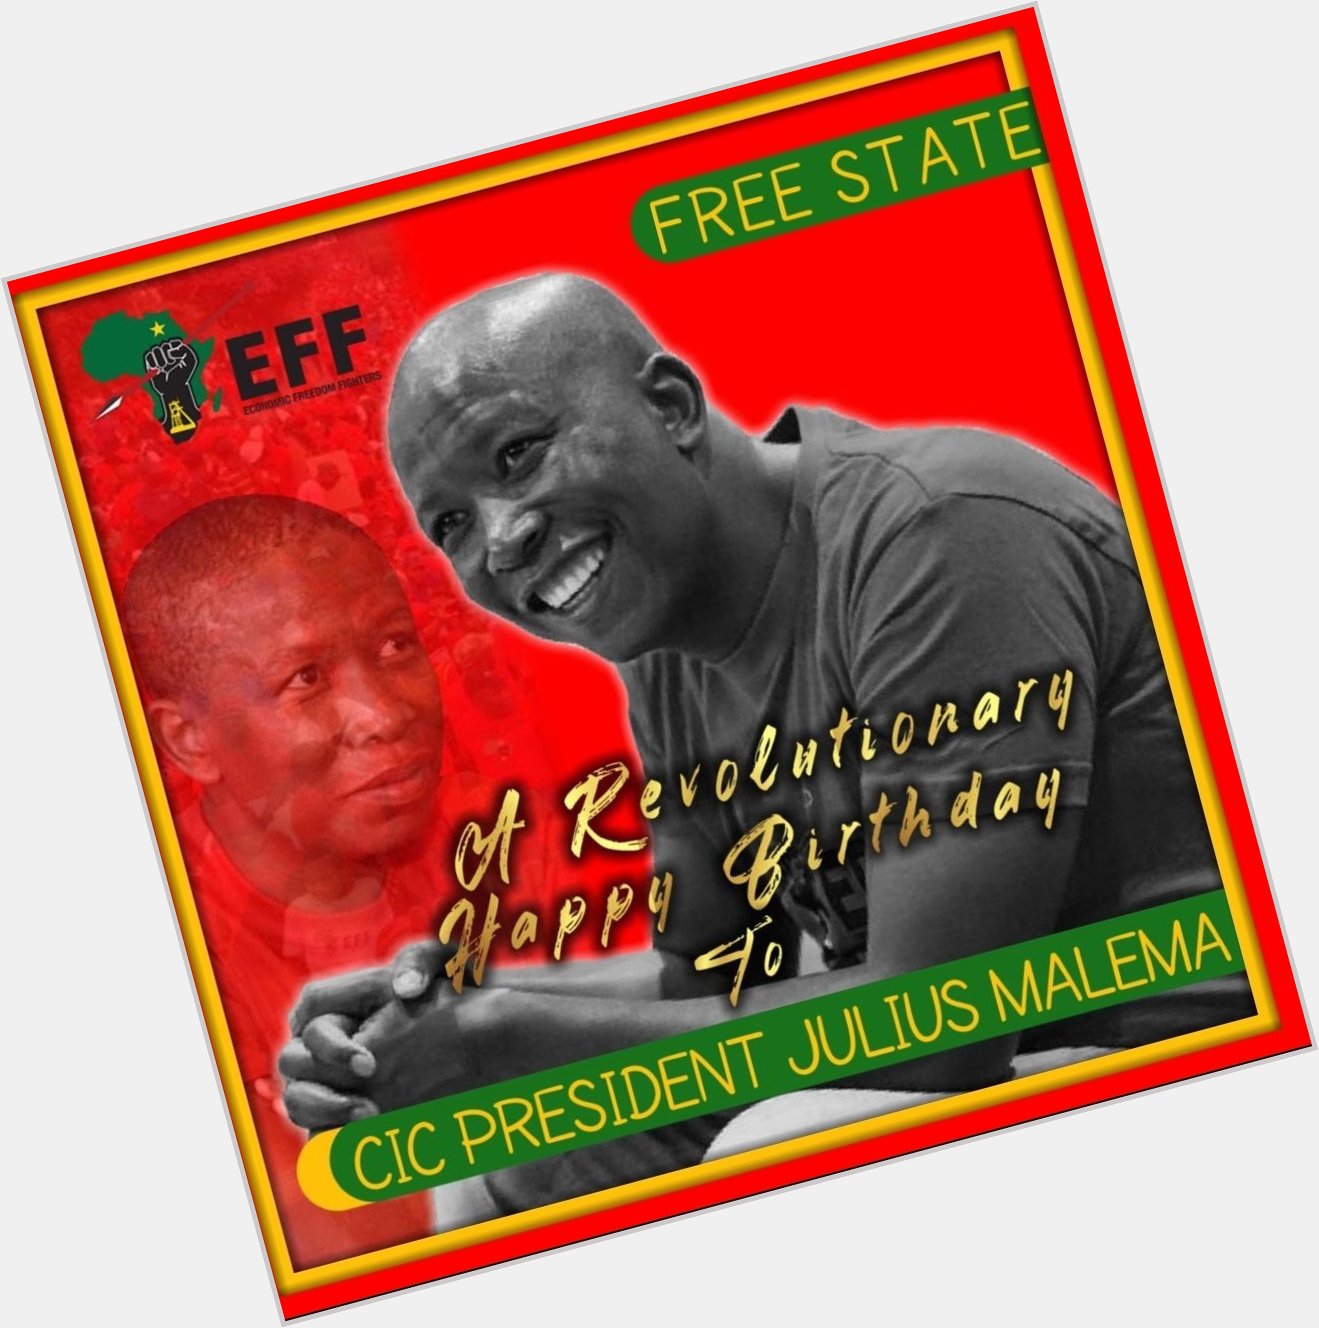    326.

Namusi ndi khou choose 

Julius malema ndi happy birthday 